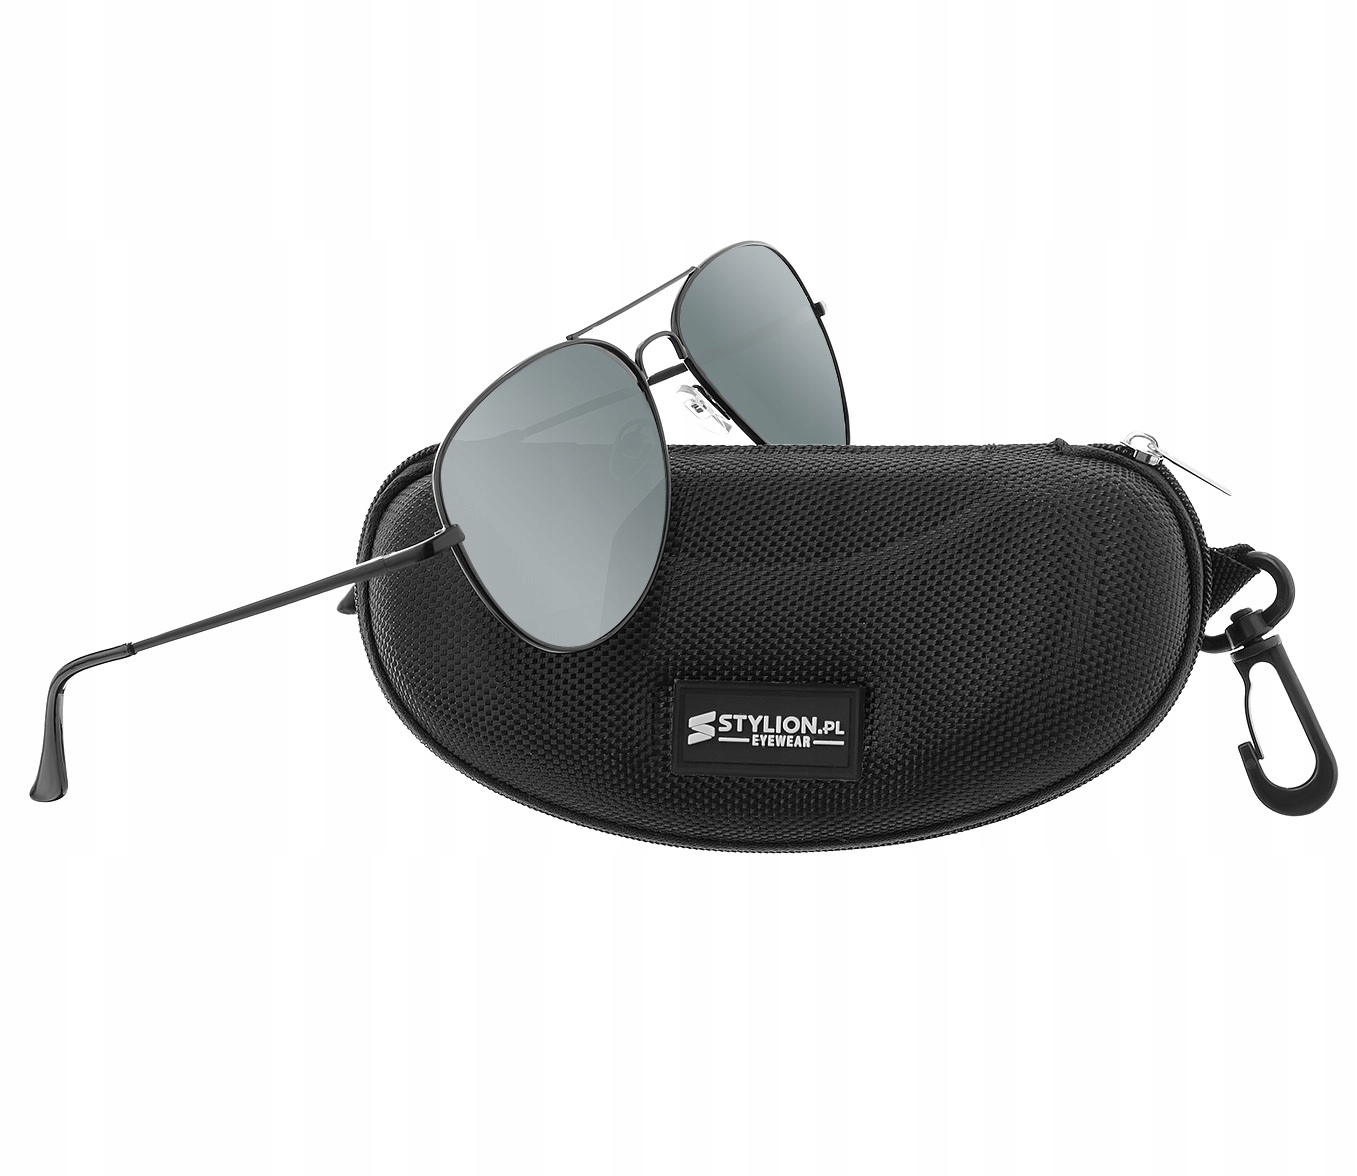 Поляризованные солнцезащитные очки-авиаторы марки Stylion